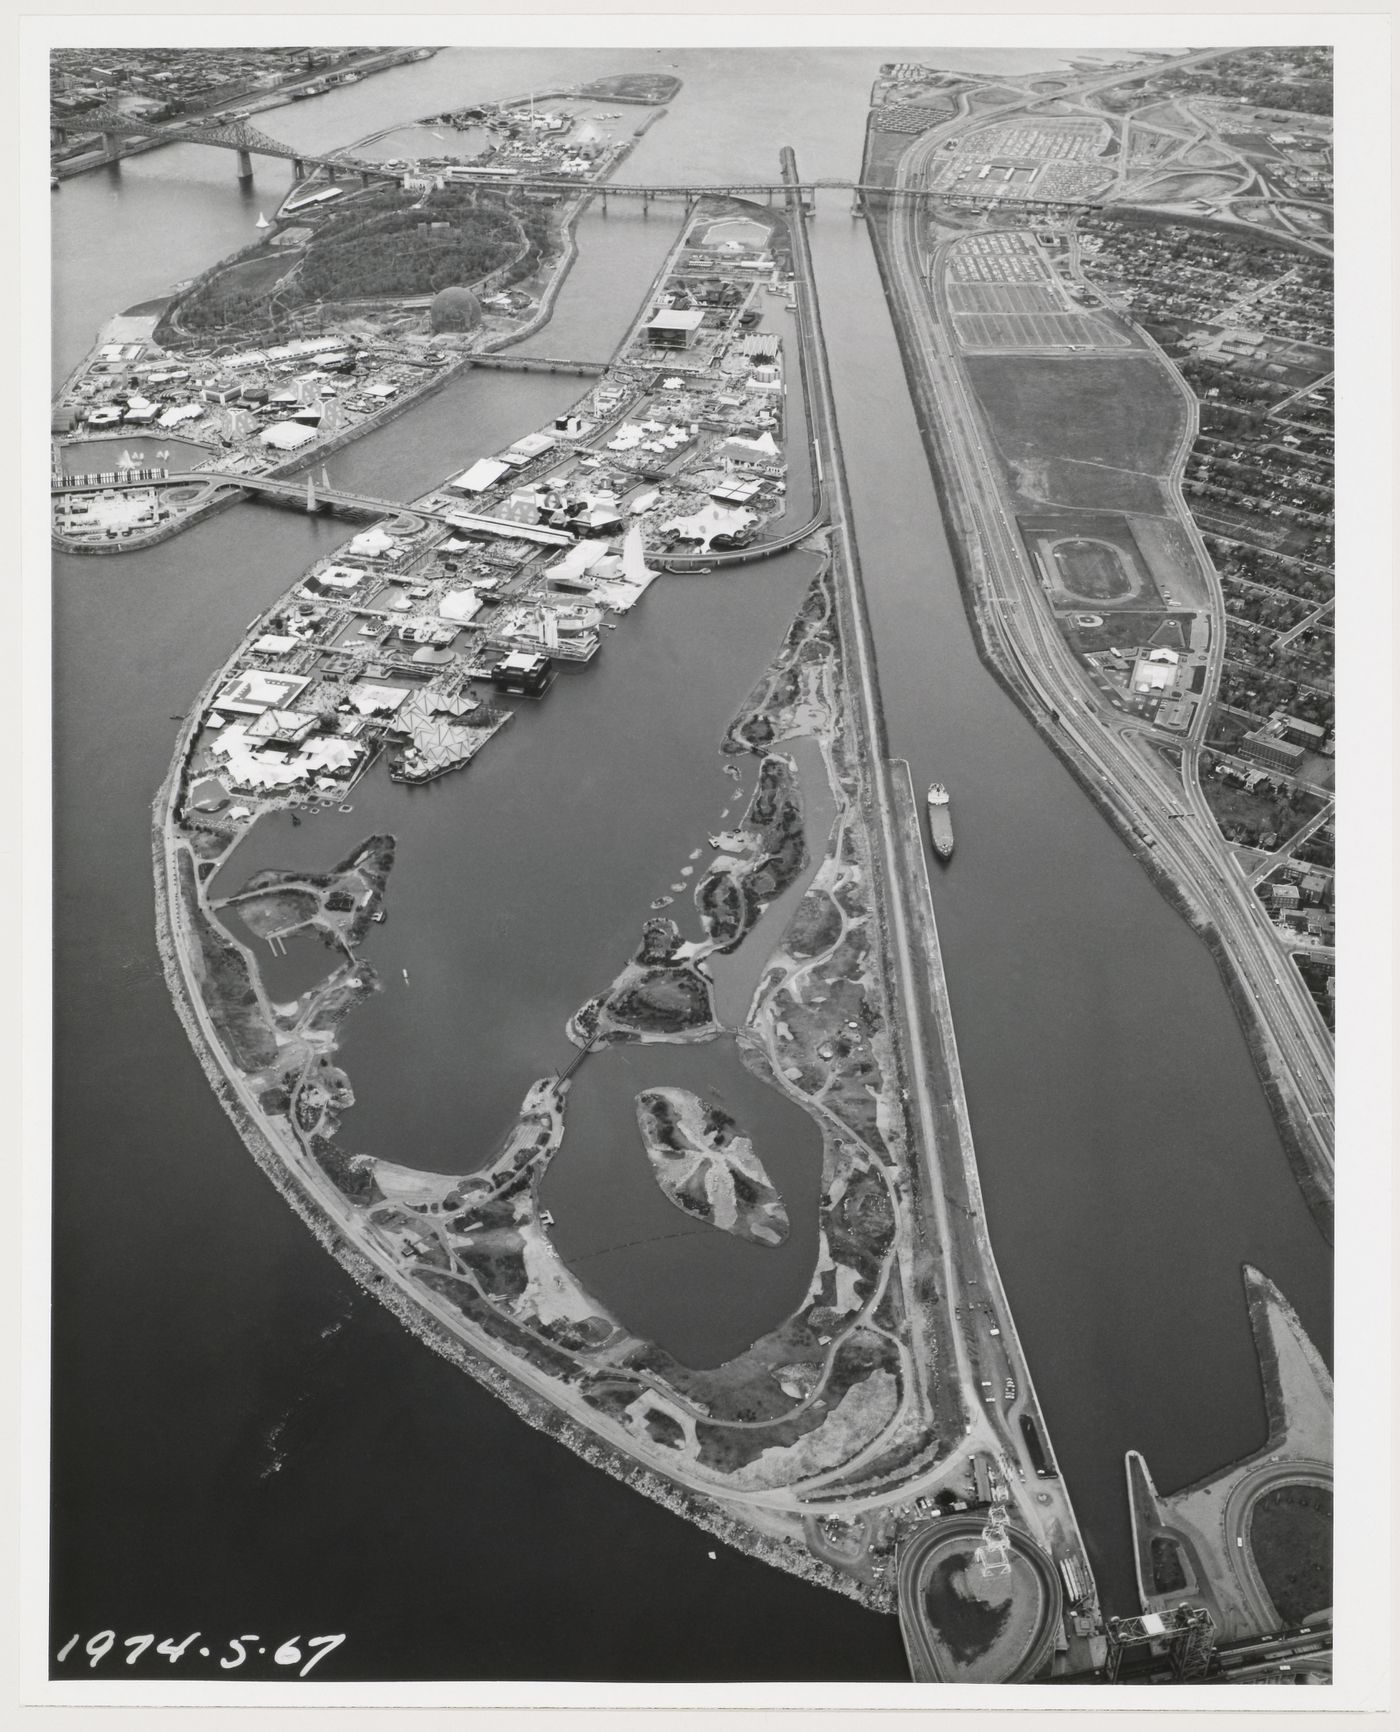 Aerial view of the Île Notre-Dame and Île Sainte-Hélène sites, Expo 67, Montréal, Québec